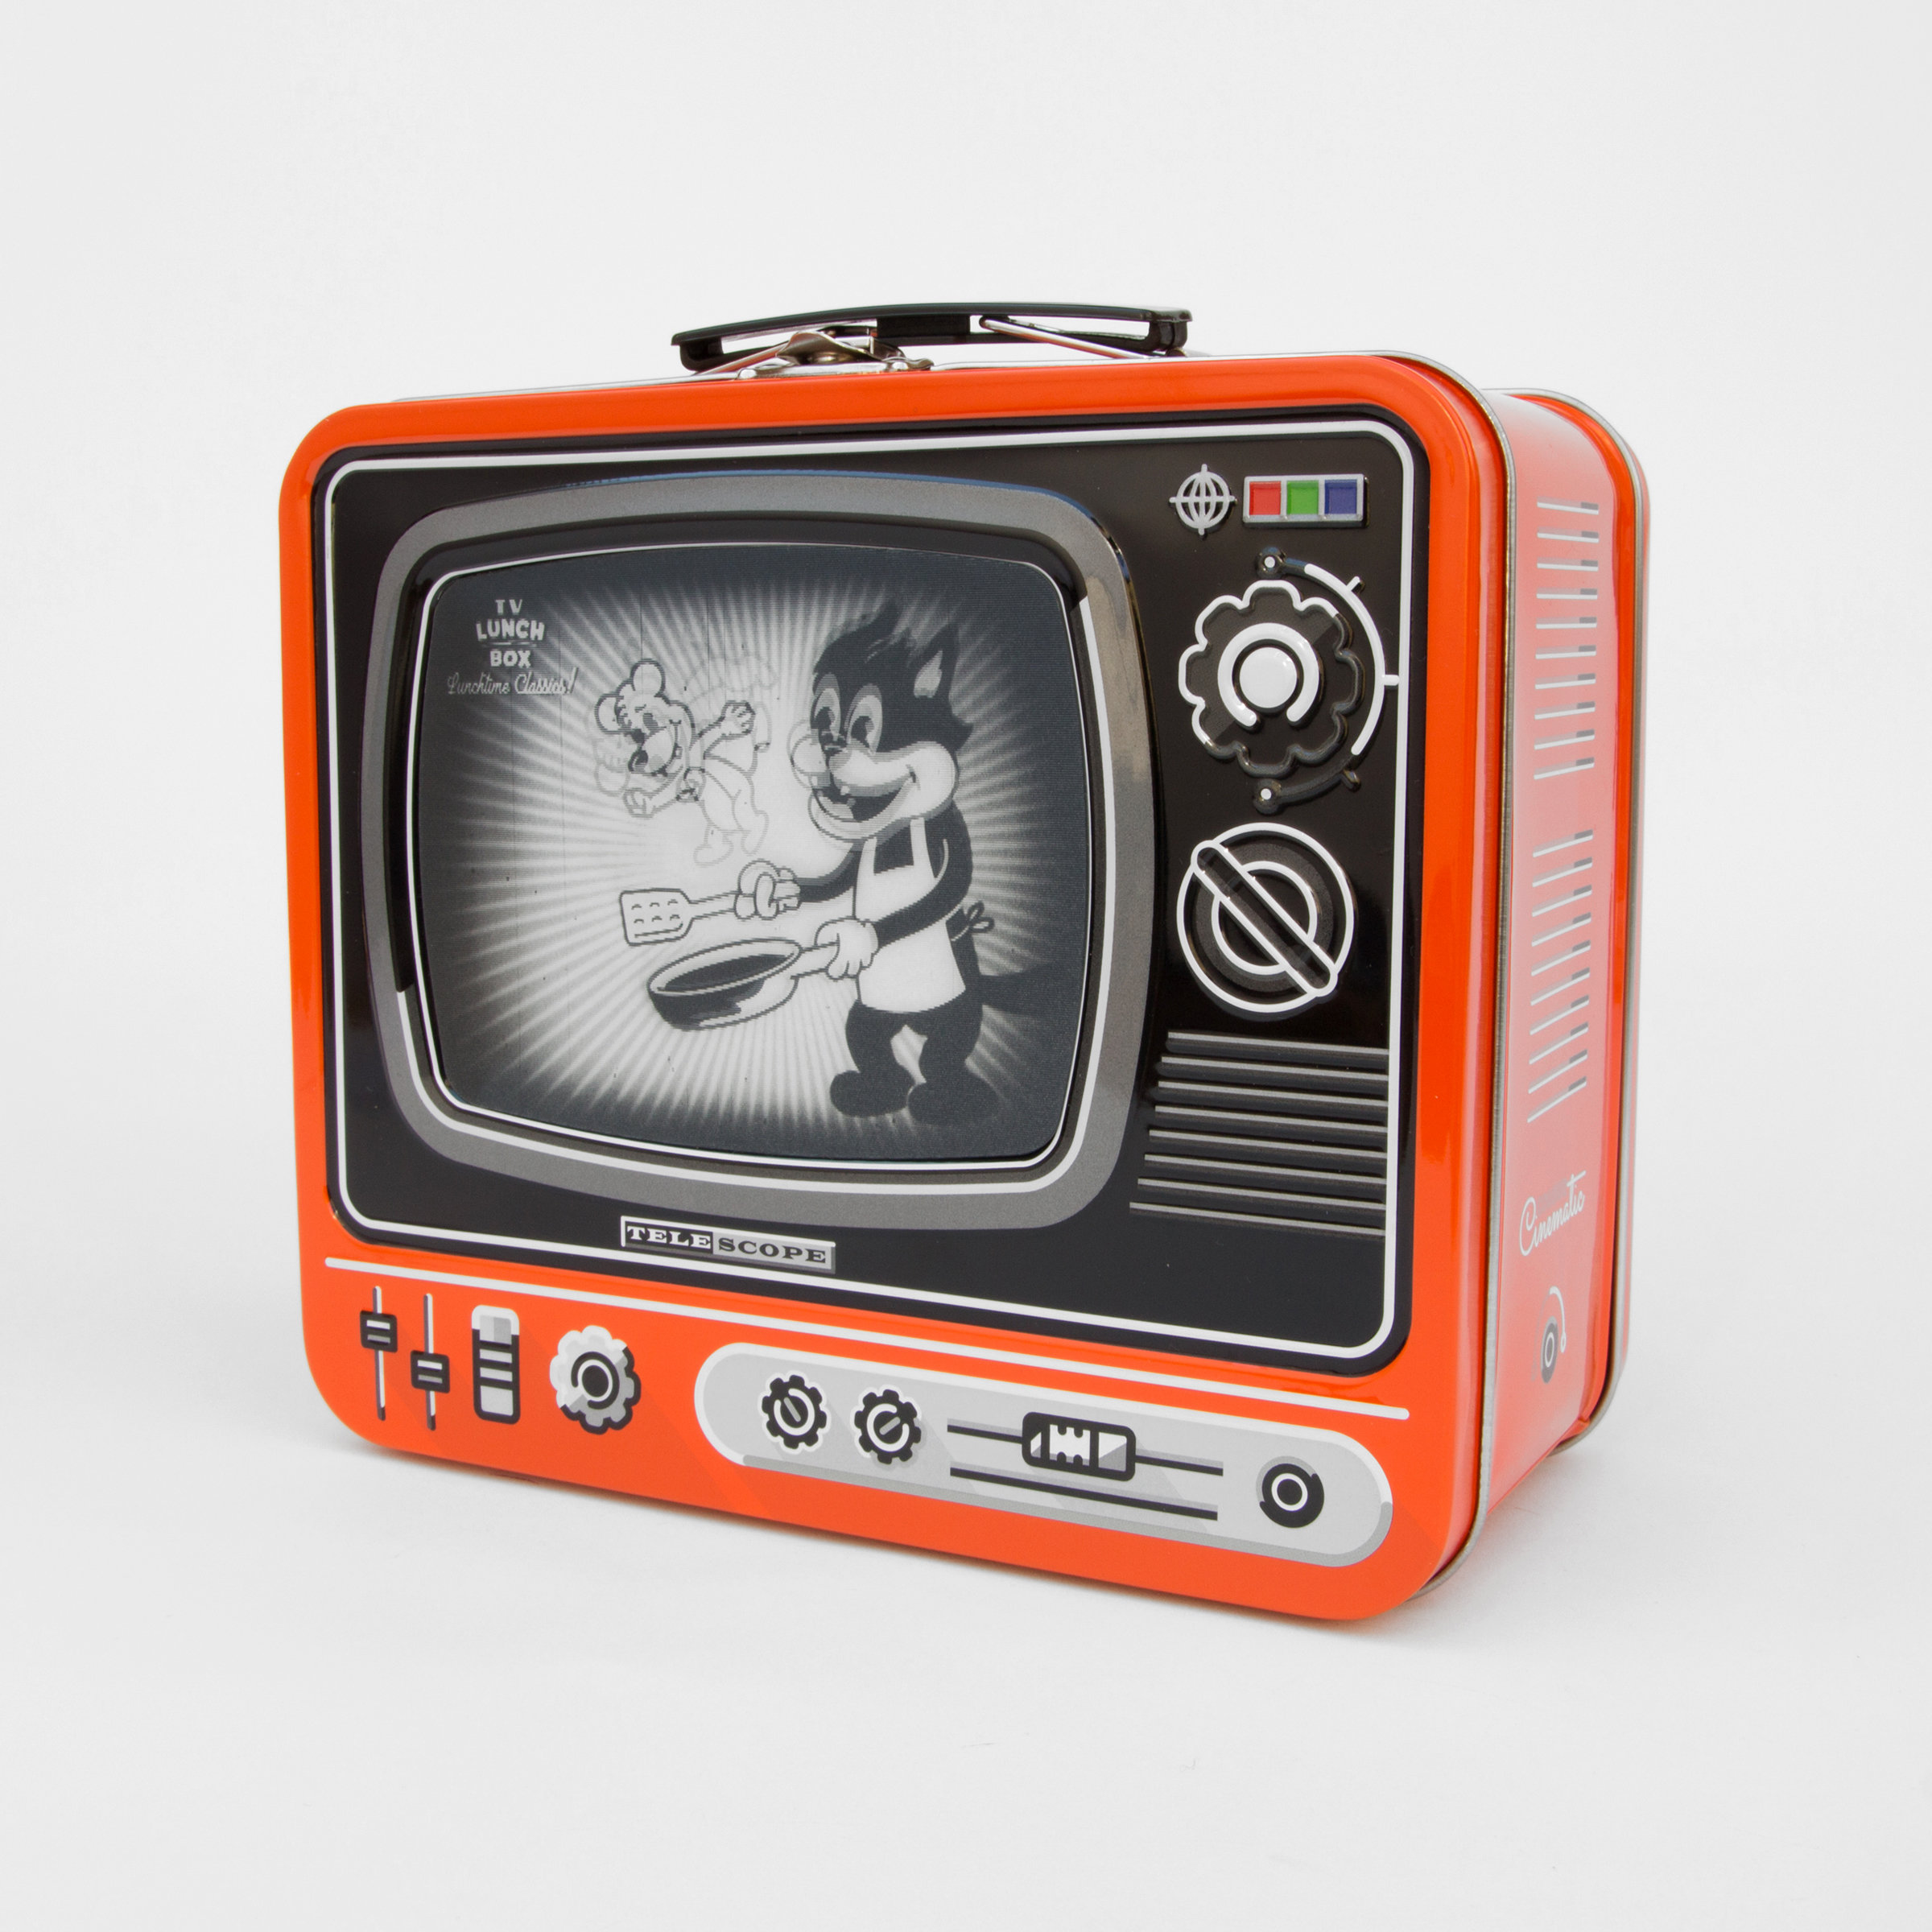 Tin TV lunchbox in orange with magic screen